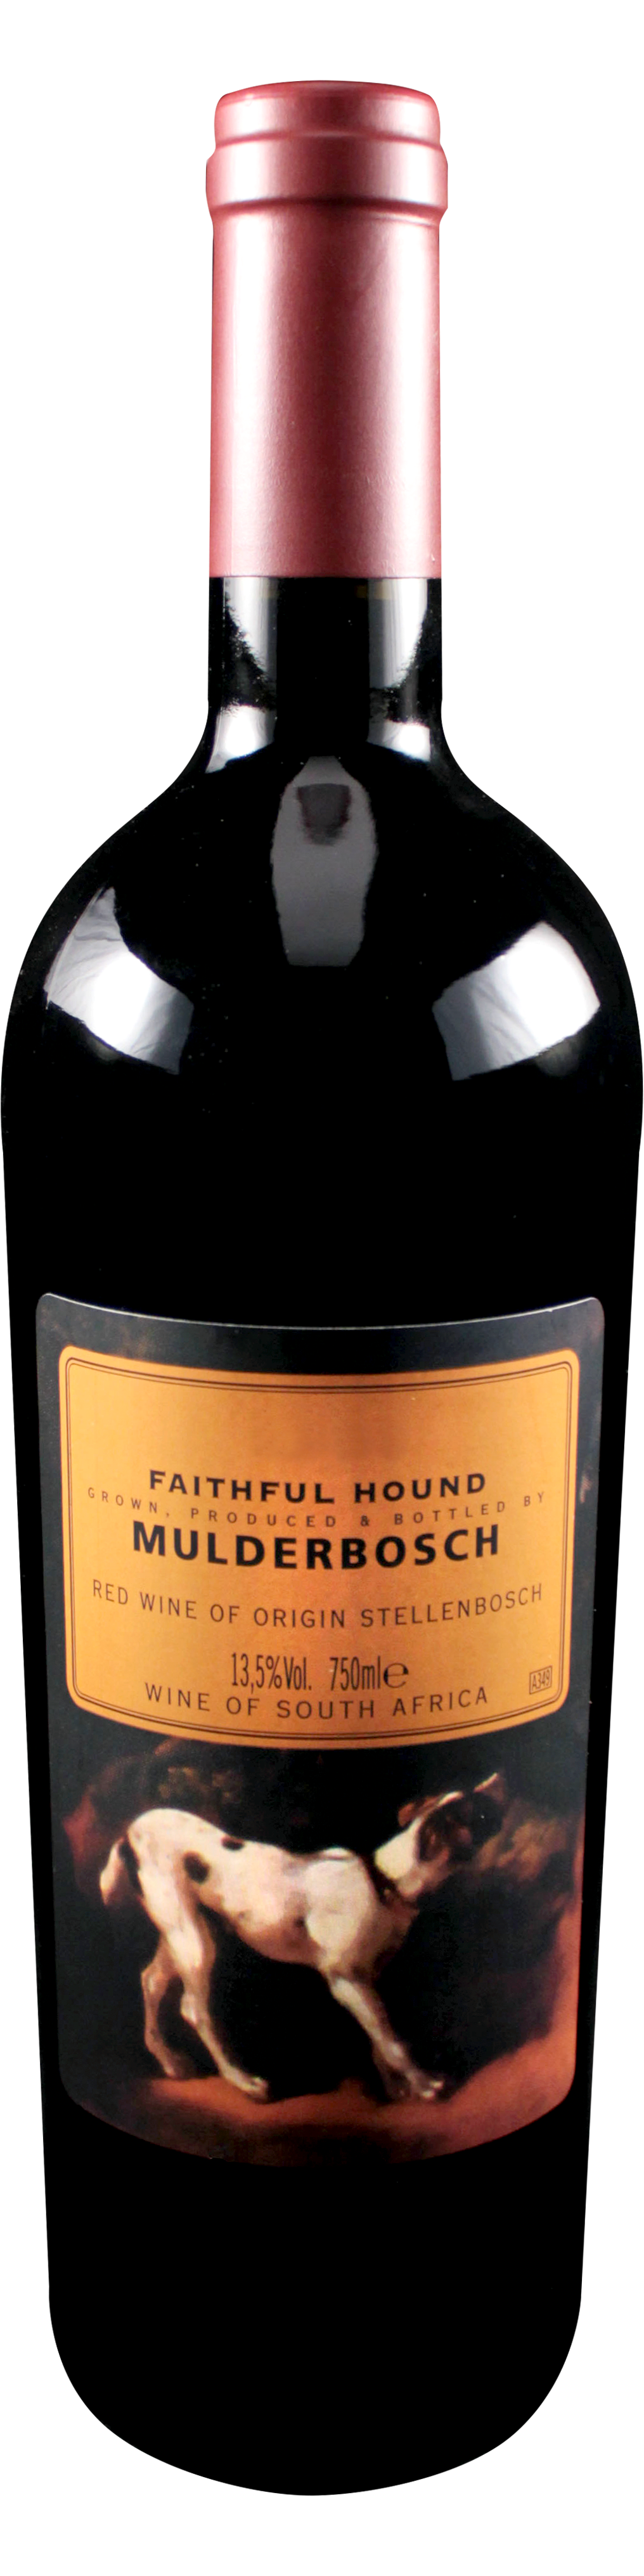 Bottle shot of 2005 Faithful Hound